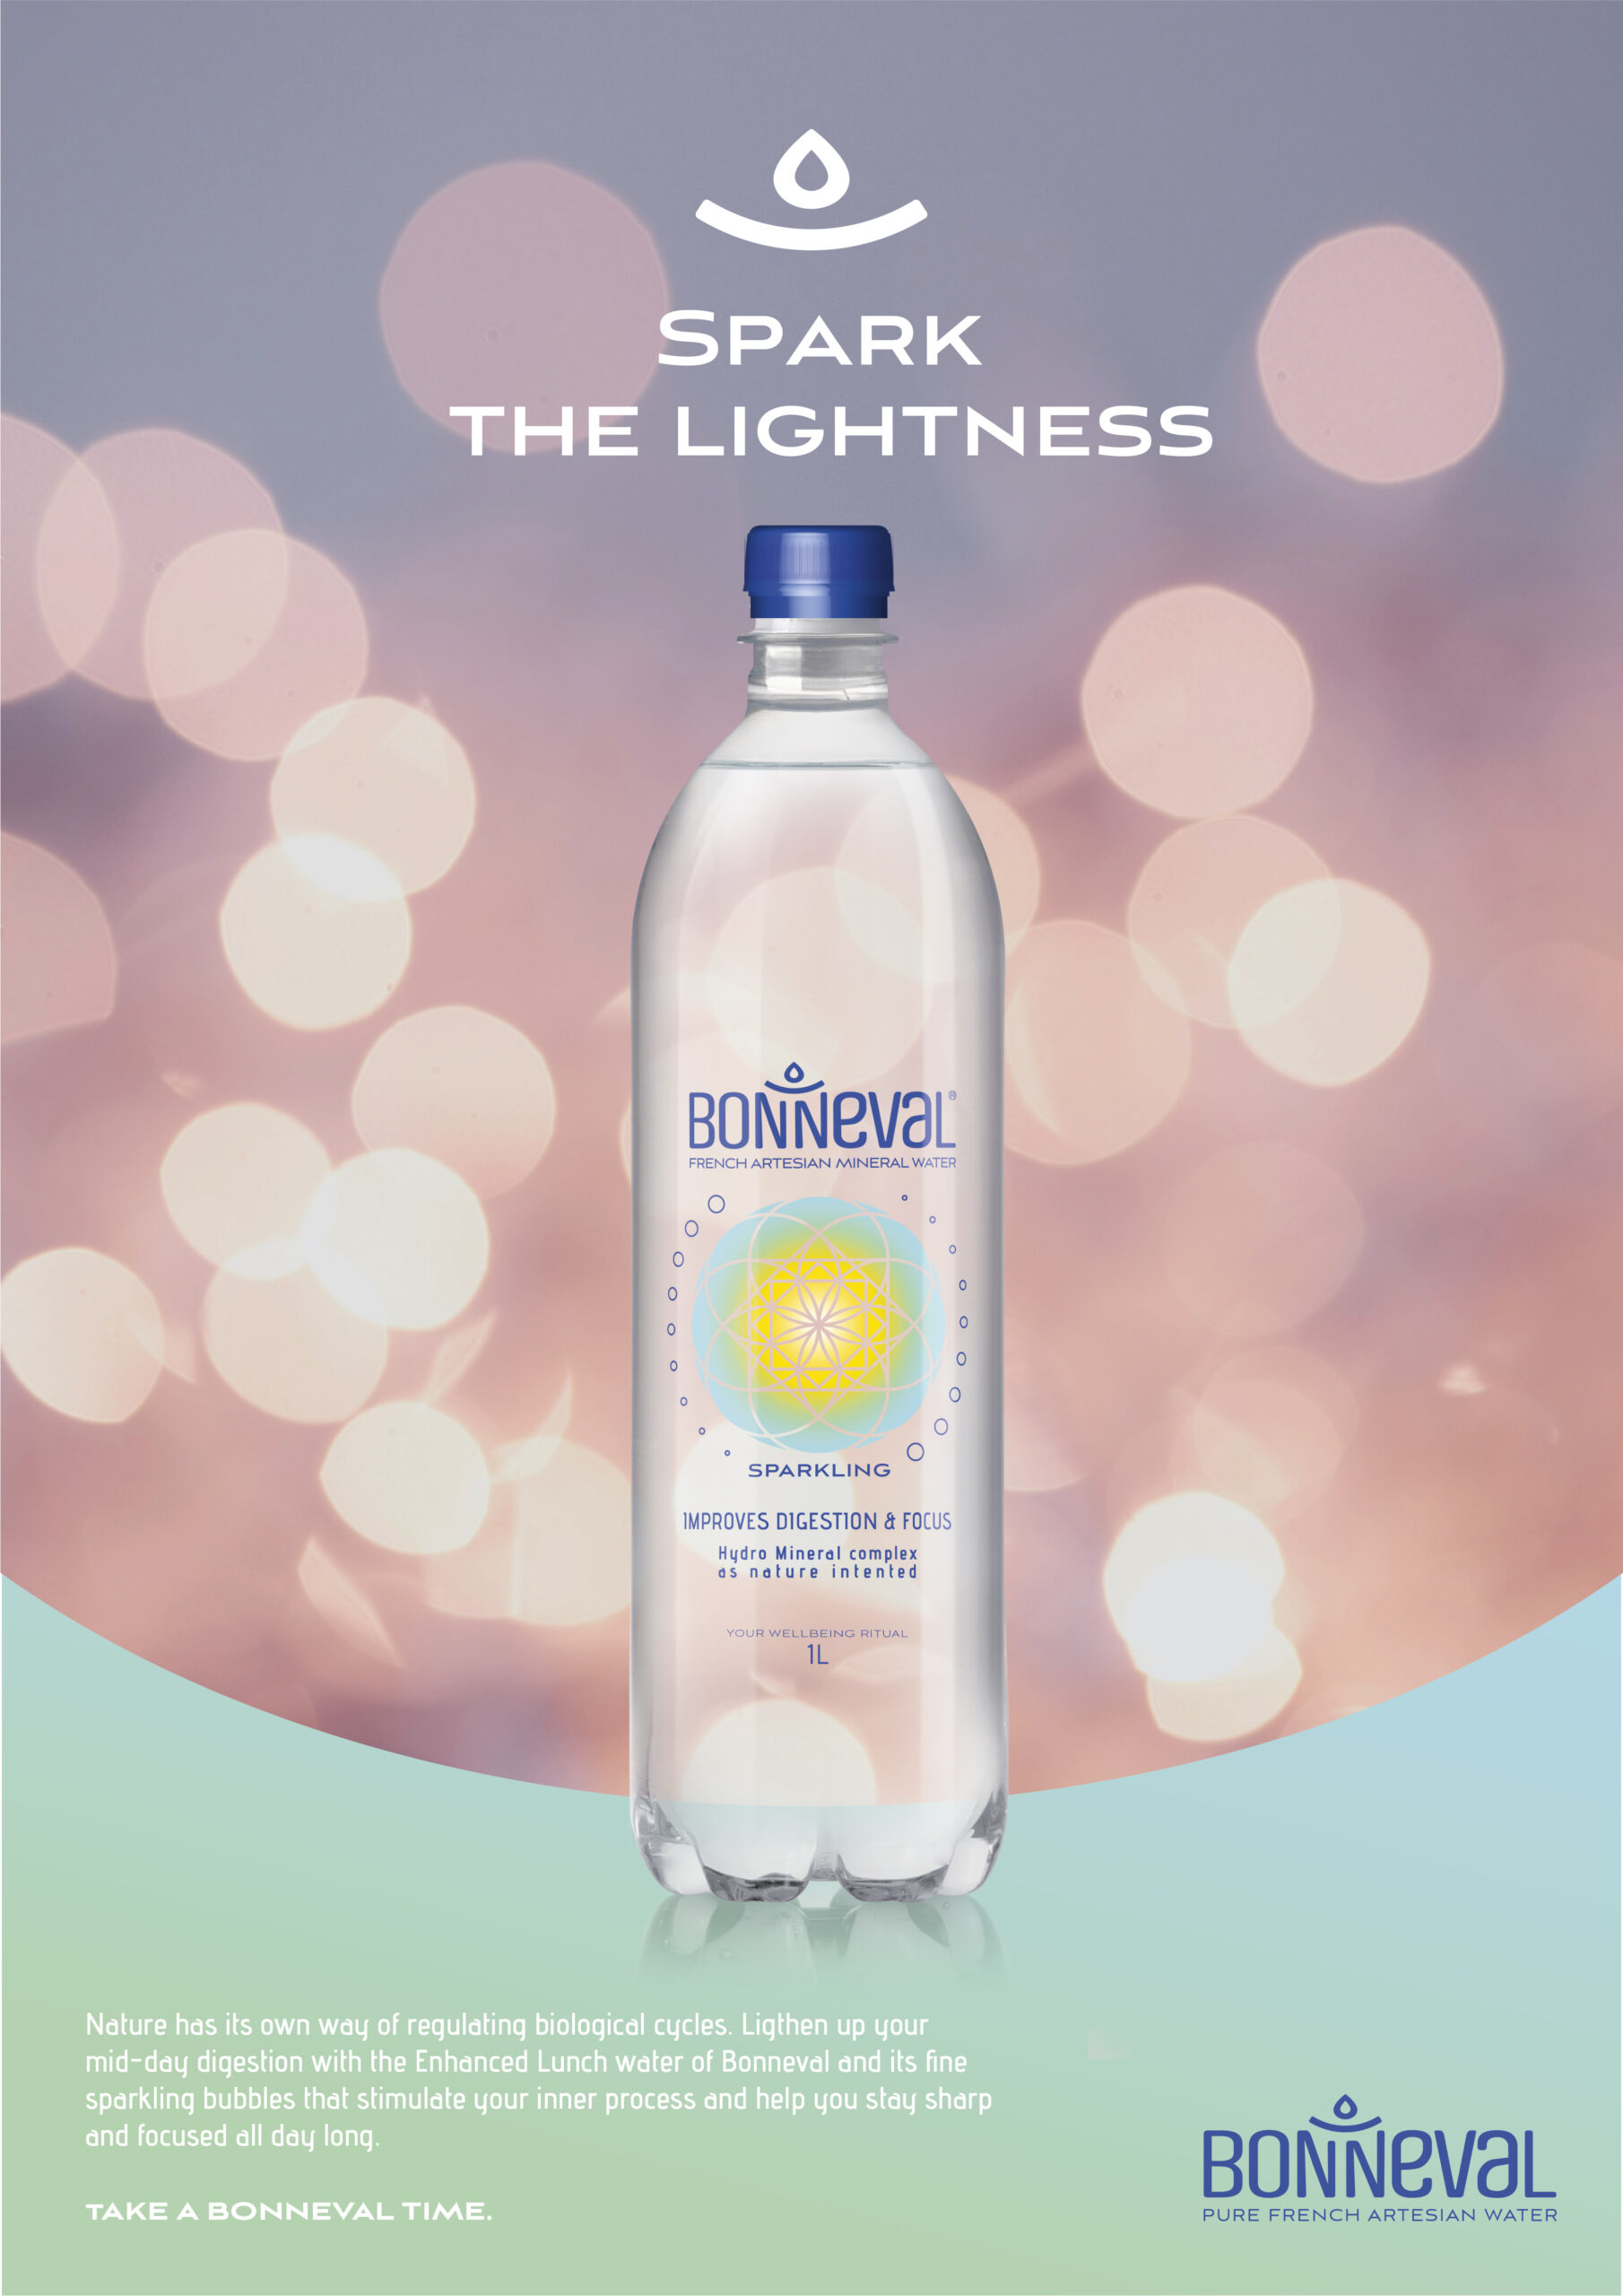 Annonce-presse pour la marque d'eau minérale Bonneval. Visuel d'une bouteille d'eau sur fond de de halos lumineux.